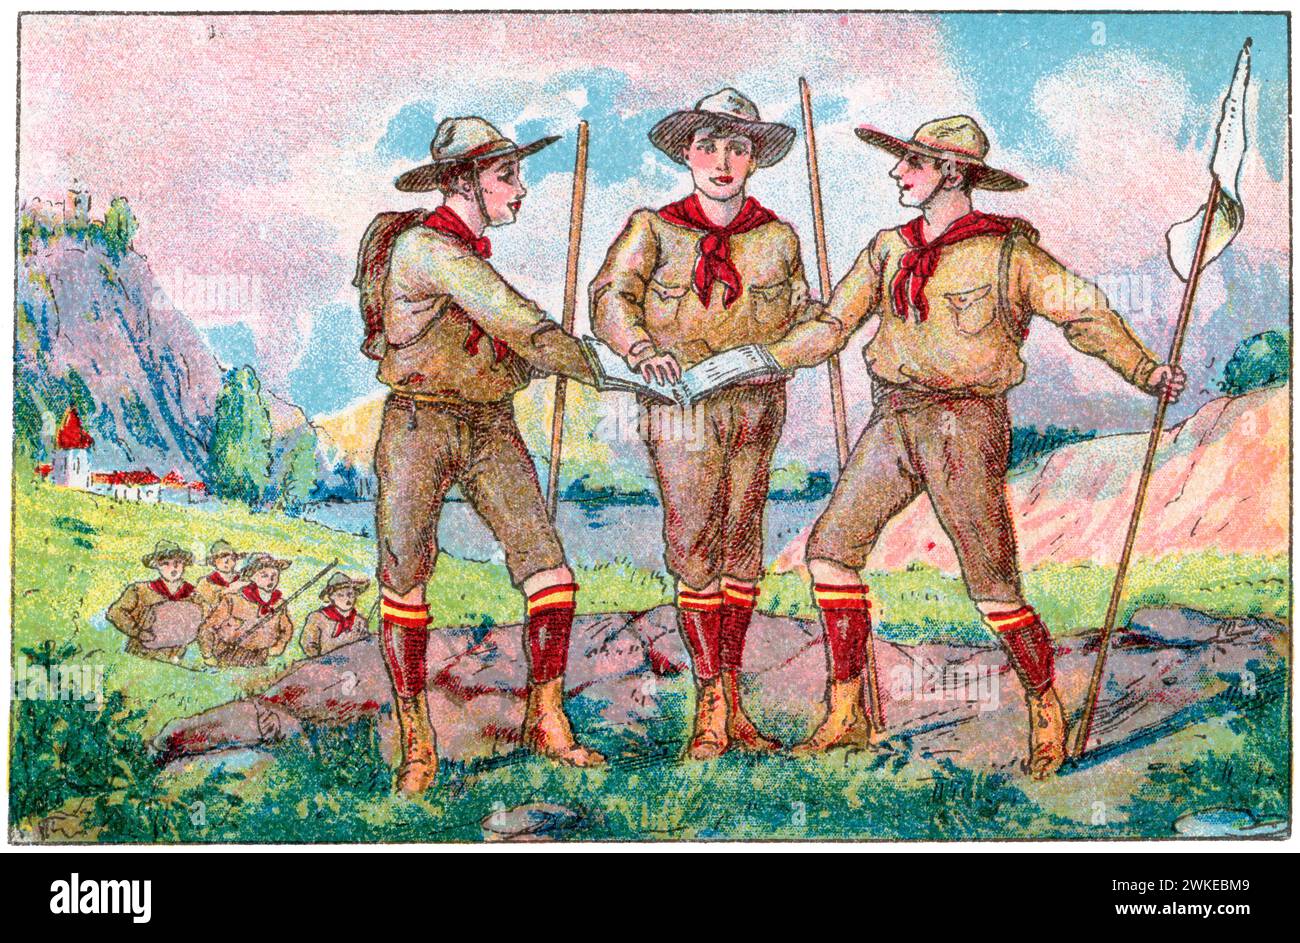 Colección de cromos de los Exploradores españoles (boy scouts). Jóvenes exploradores prometiendo obediencia al código de los boy-scouts. Años 1930. Stock Photo